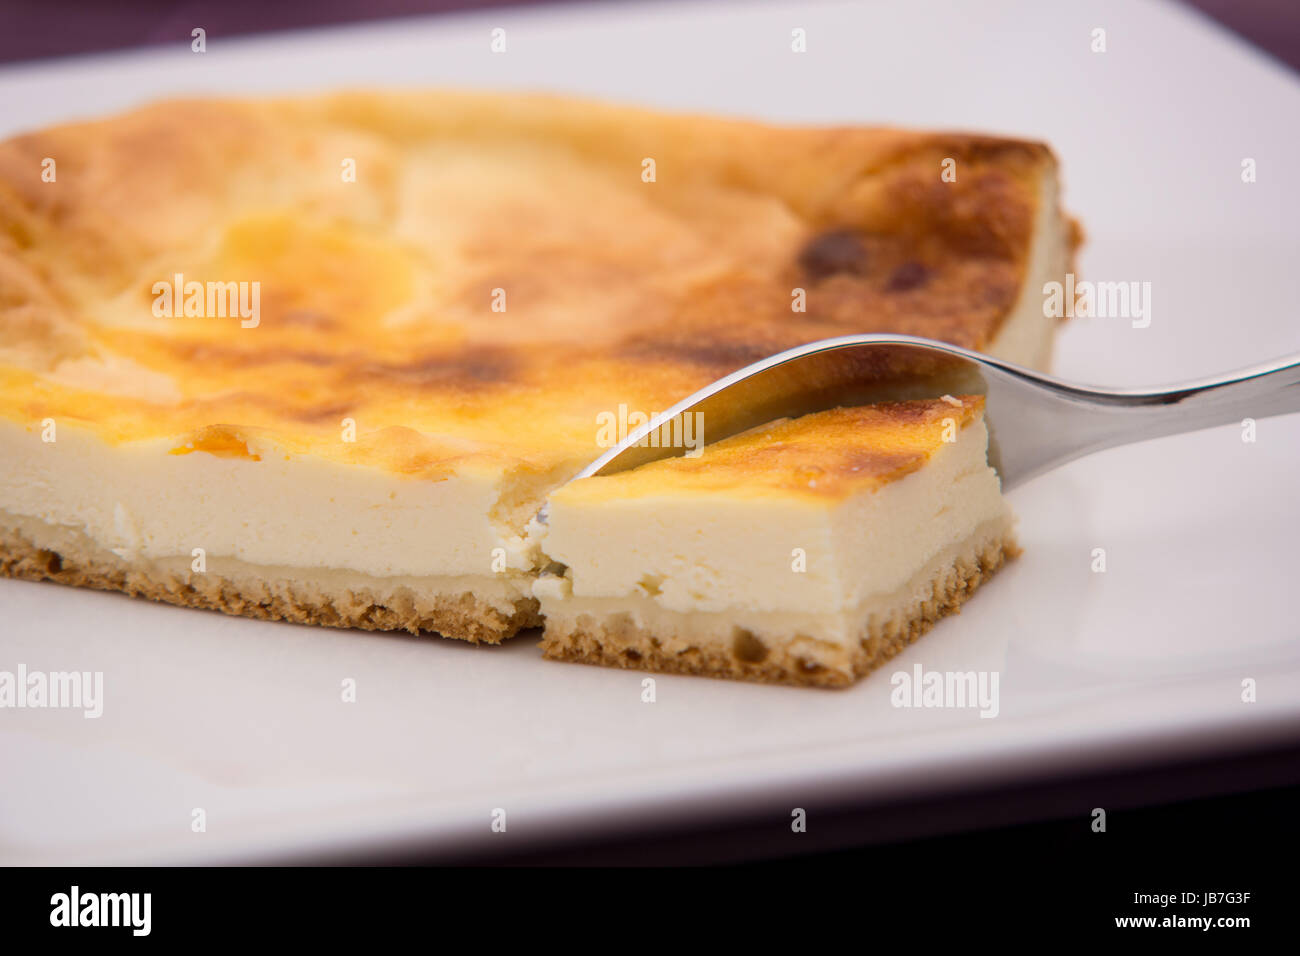 Ein Stück Käsekuchen angerichtet auf einem weißen Teller Foto Stock